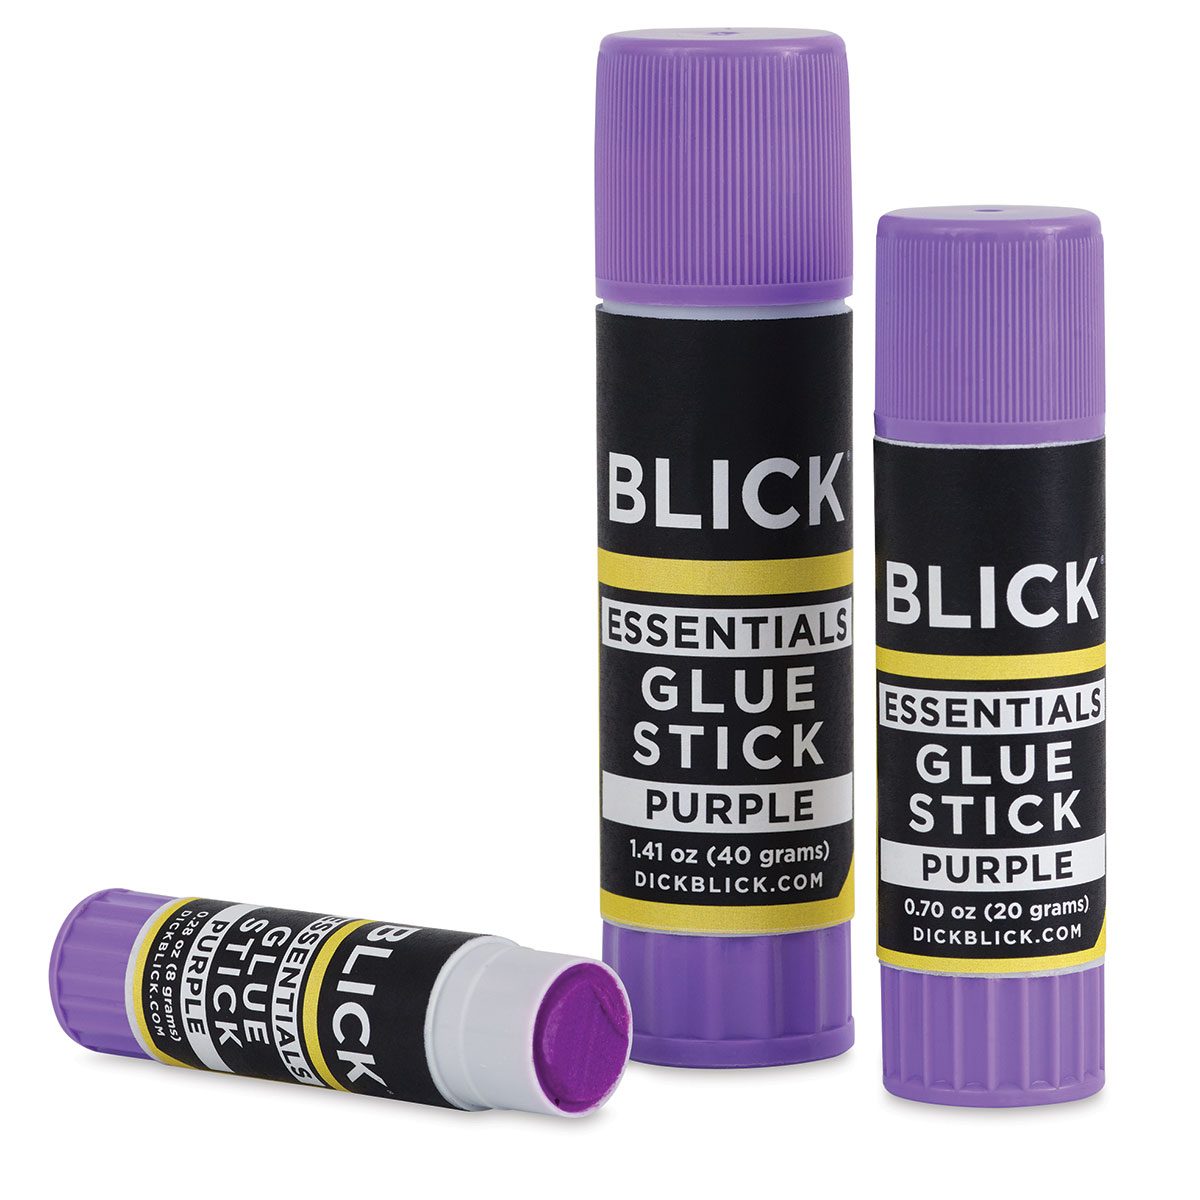 Blick White Glue